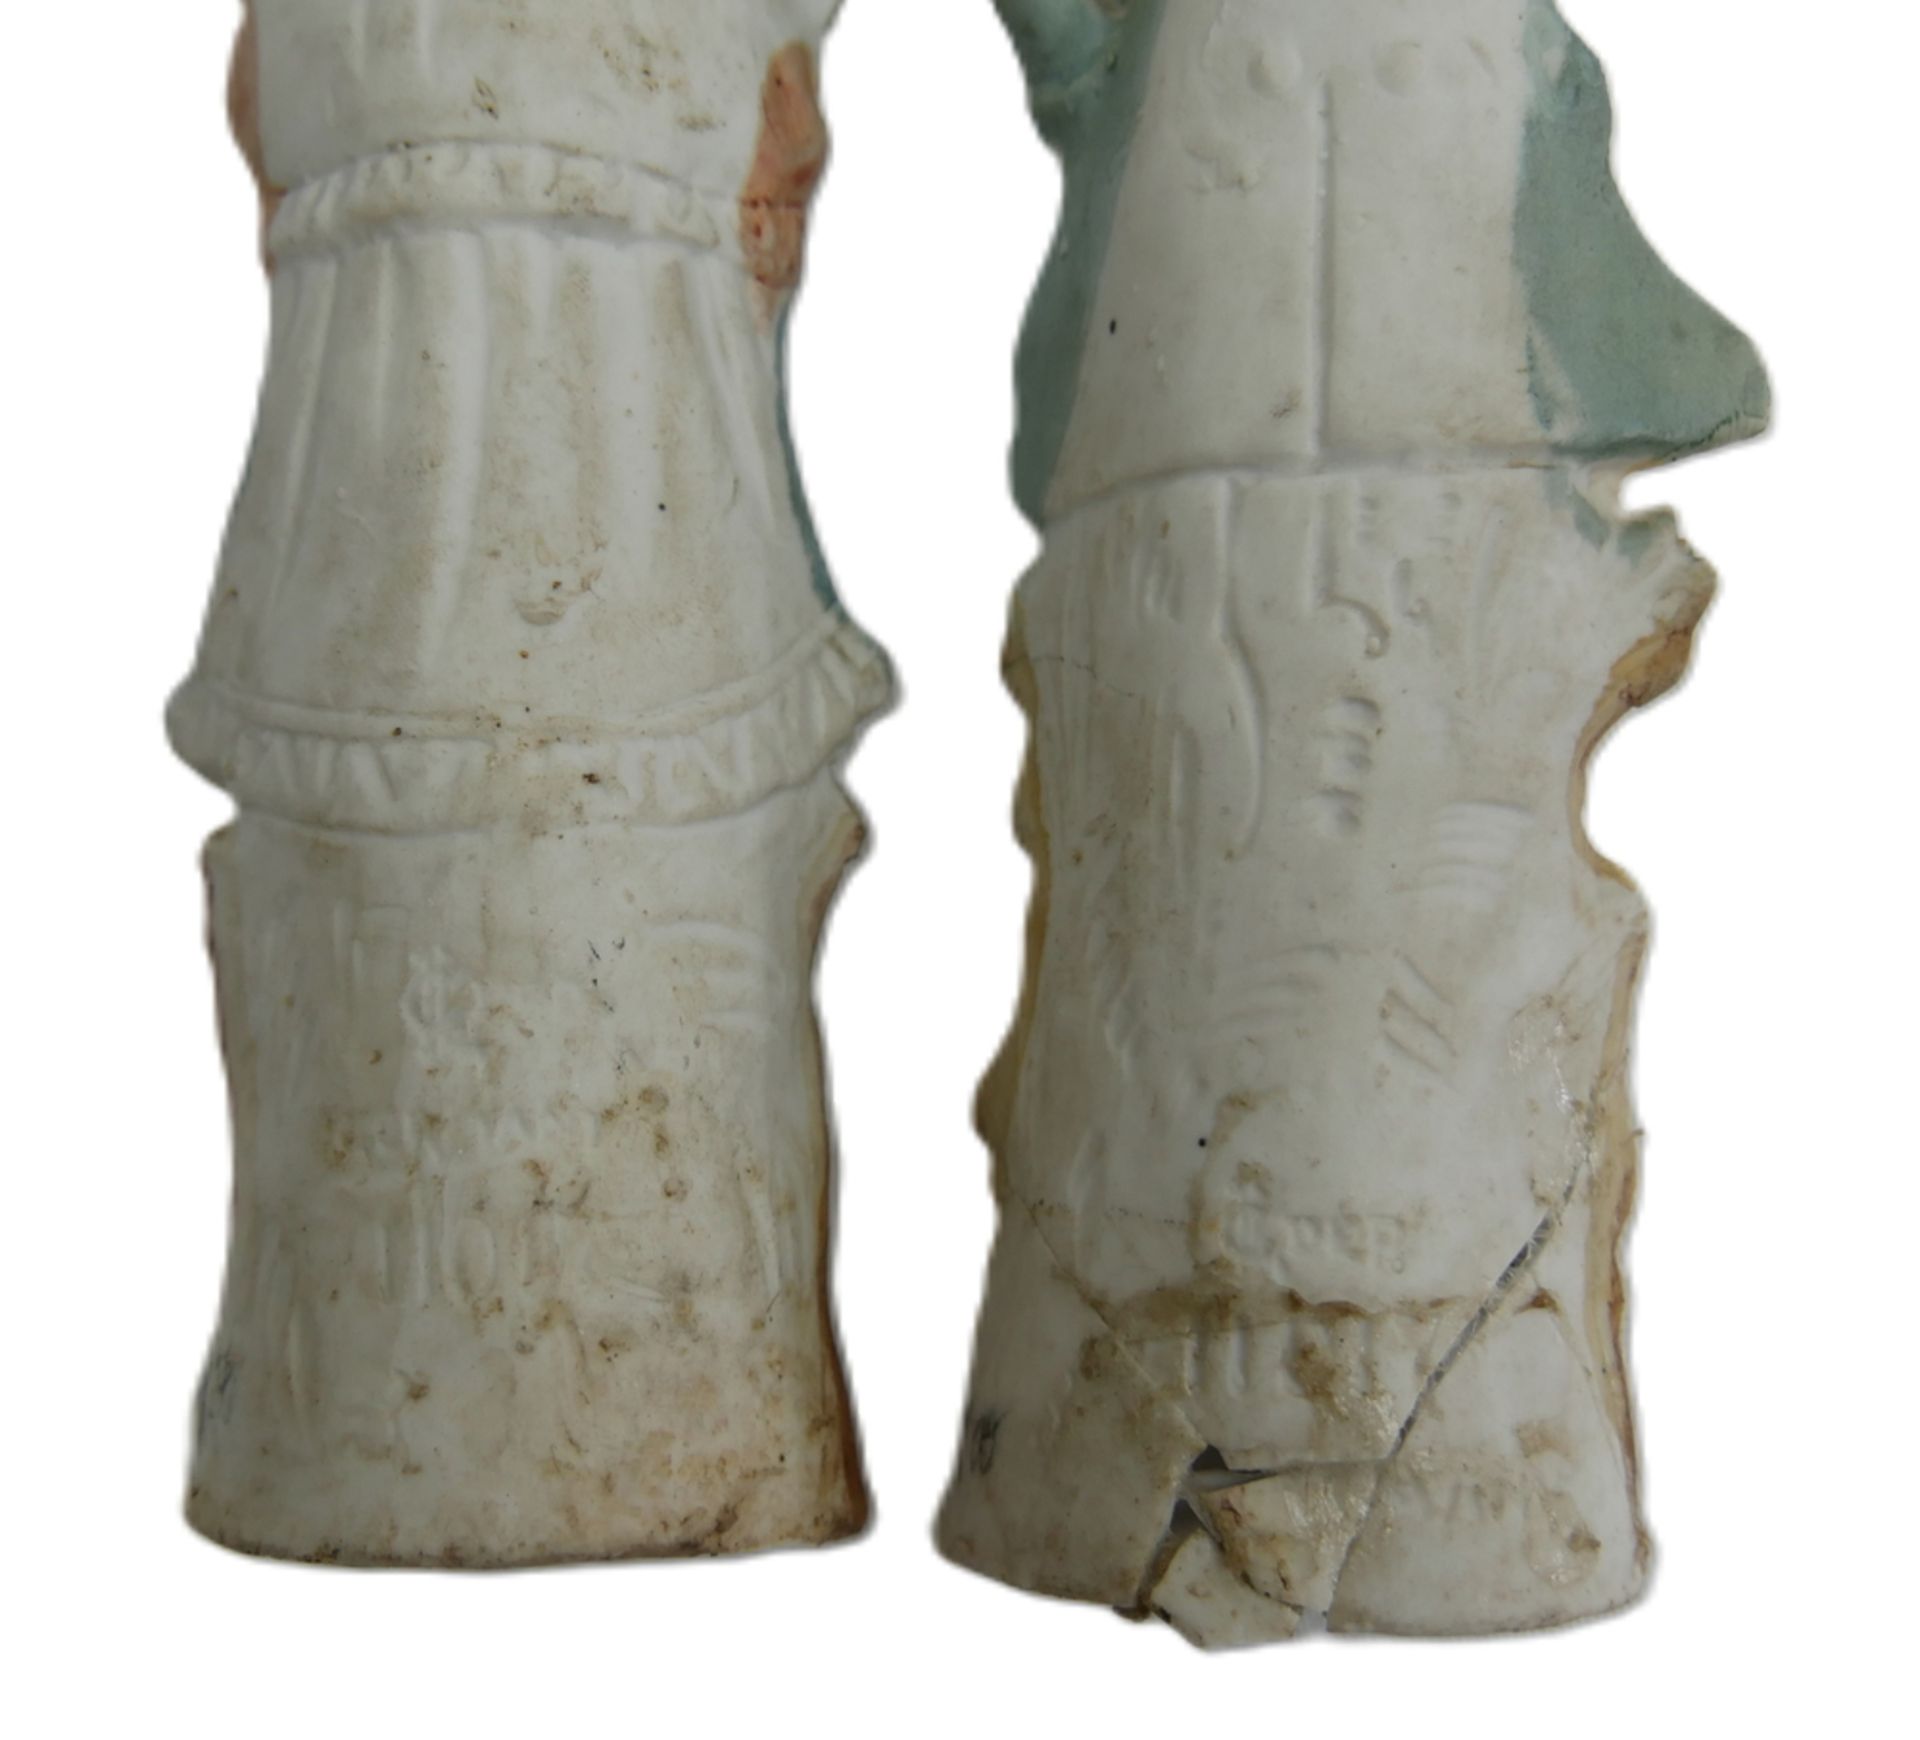 2 antike Bisquit Porzellanfiguren, berieben, der Knabe wurde am Sockel geklebt, Chips vorhanden. - Bild 2 aus 2